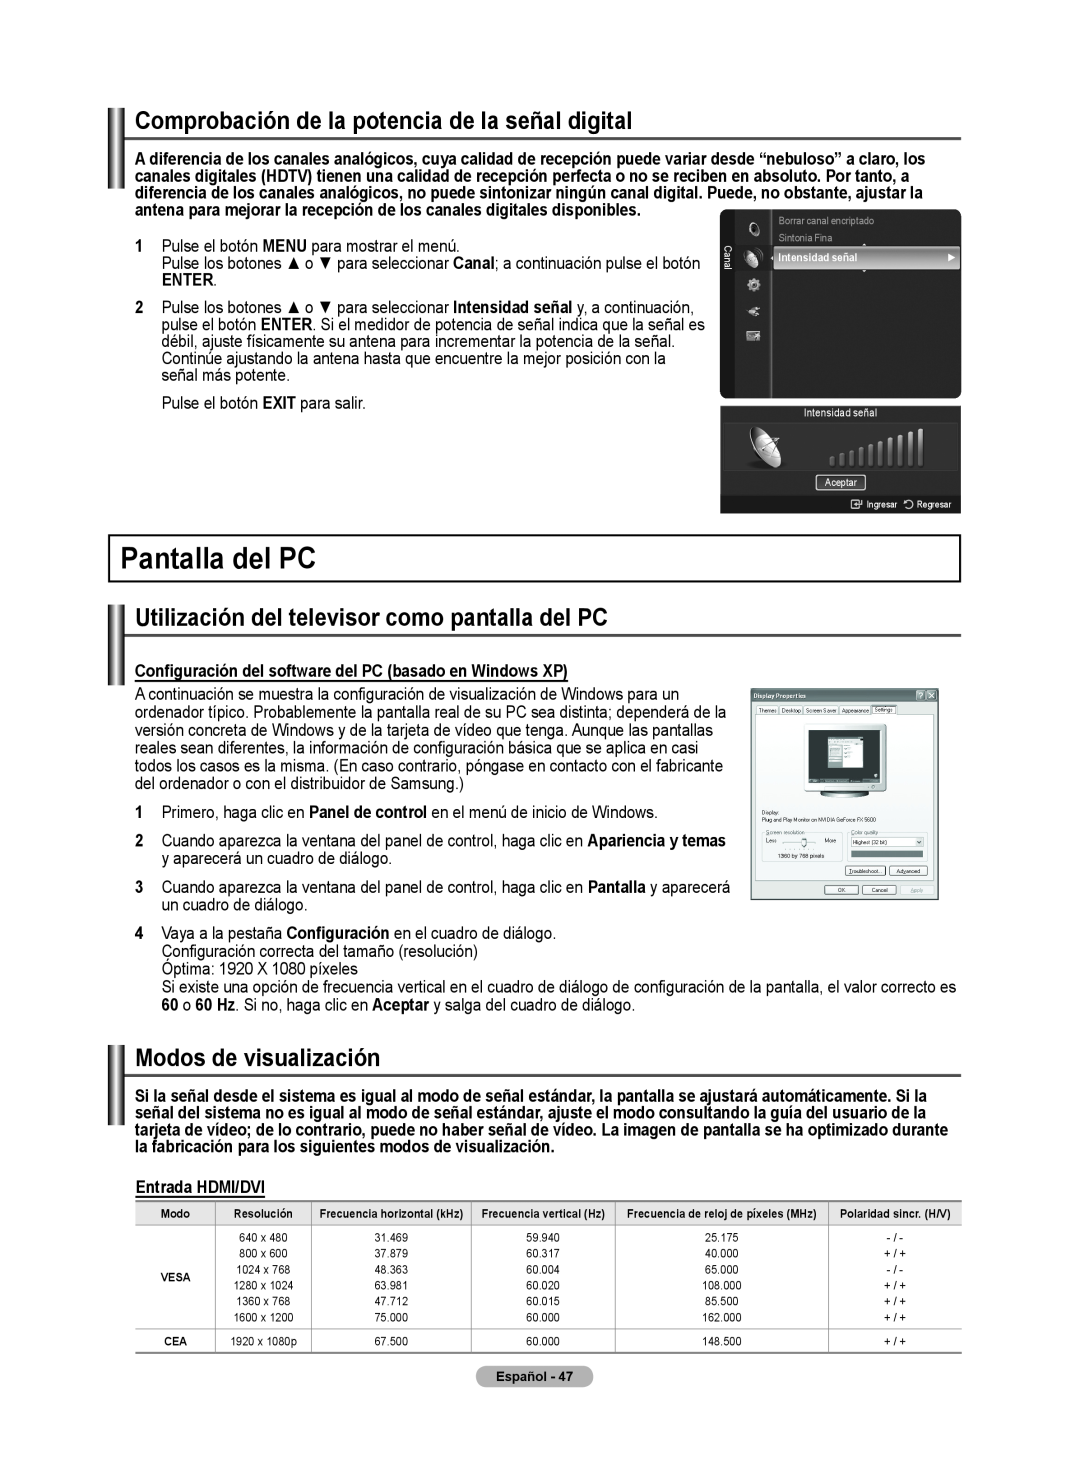 Samsung 510 user manual Pantallla del PC, Comprobación de la potencia de la señal digital, Modos de visualización, Enter 